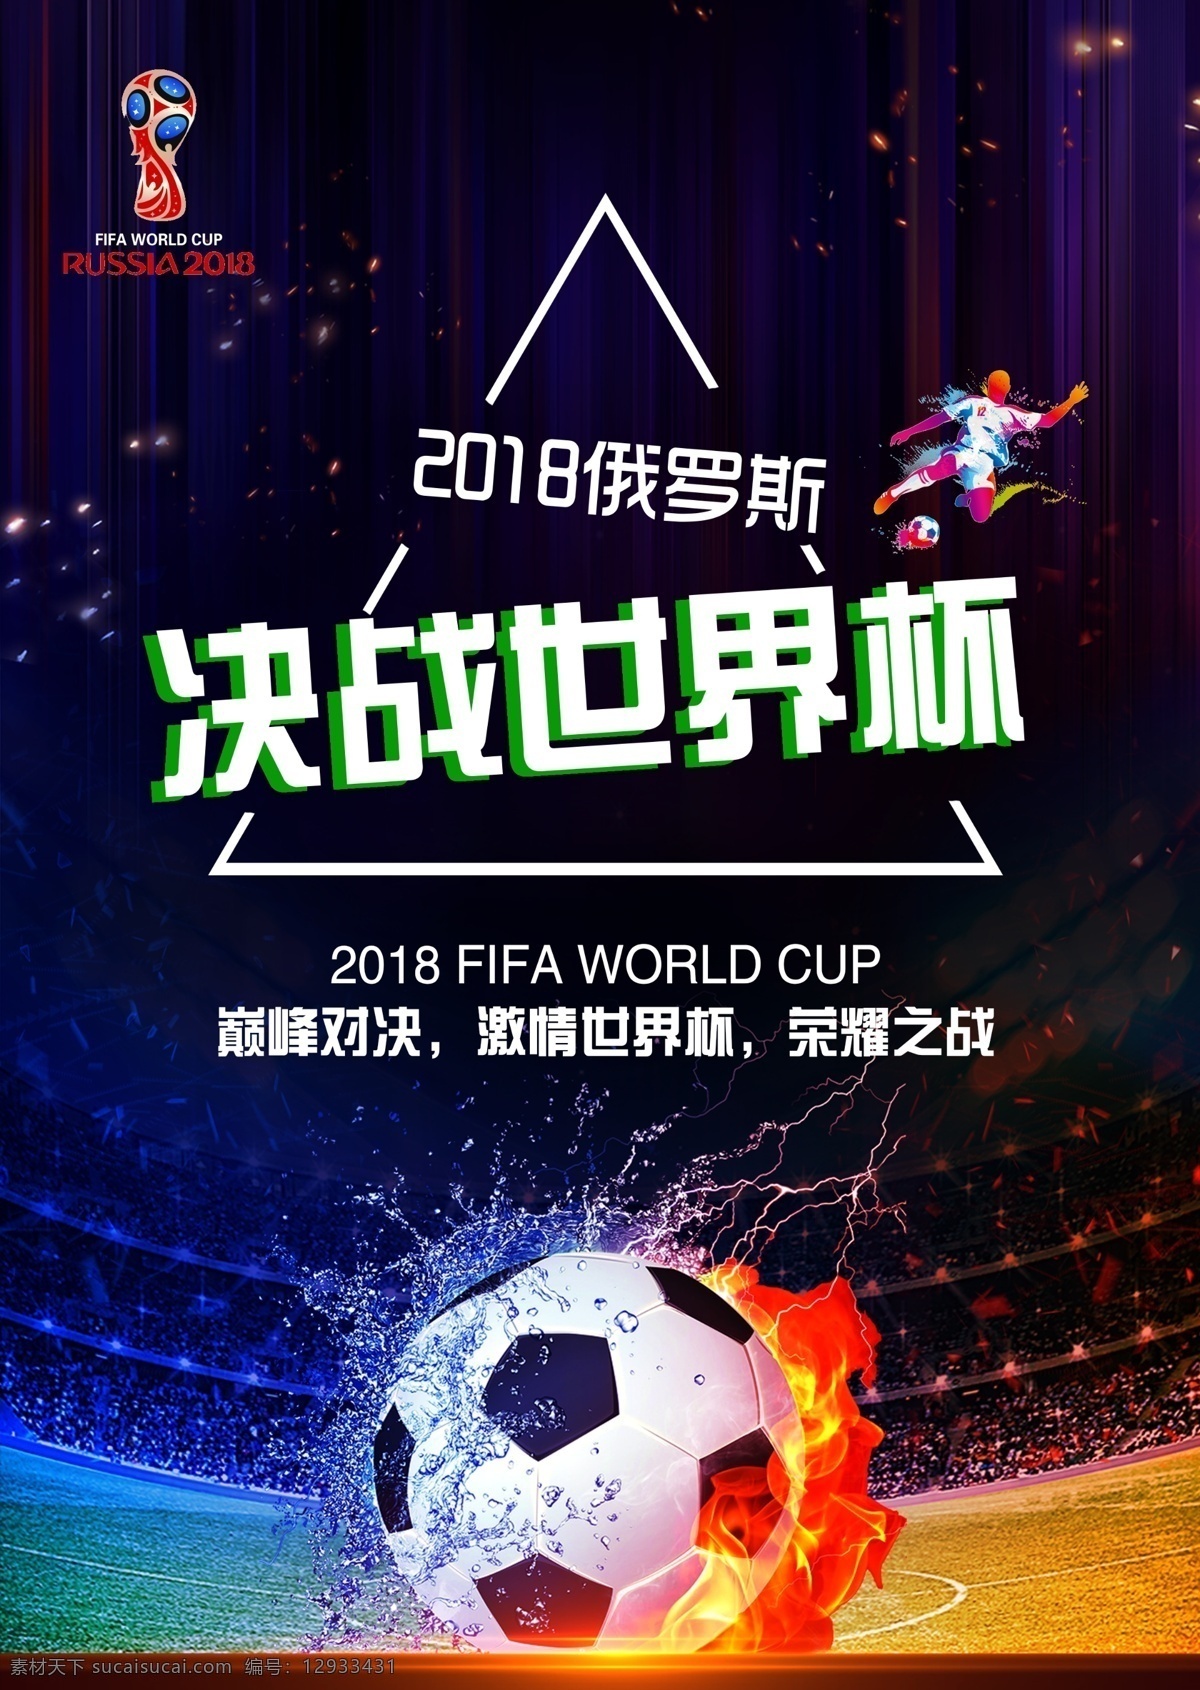 世界杯 足球赛 海报 足球 俄罗斯 巅峰对决 2018